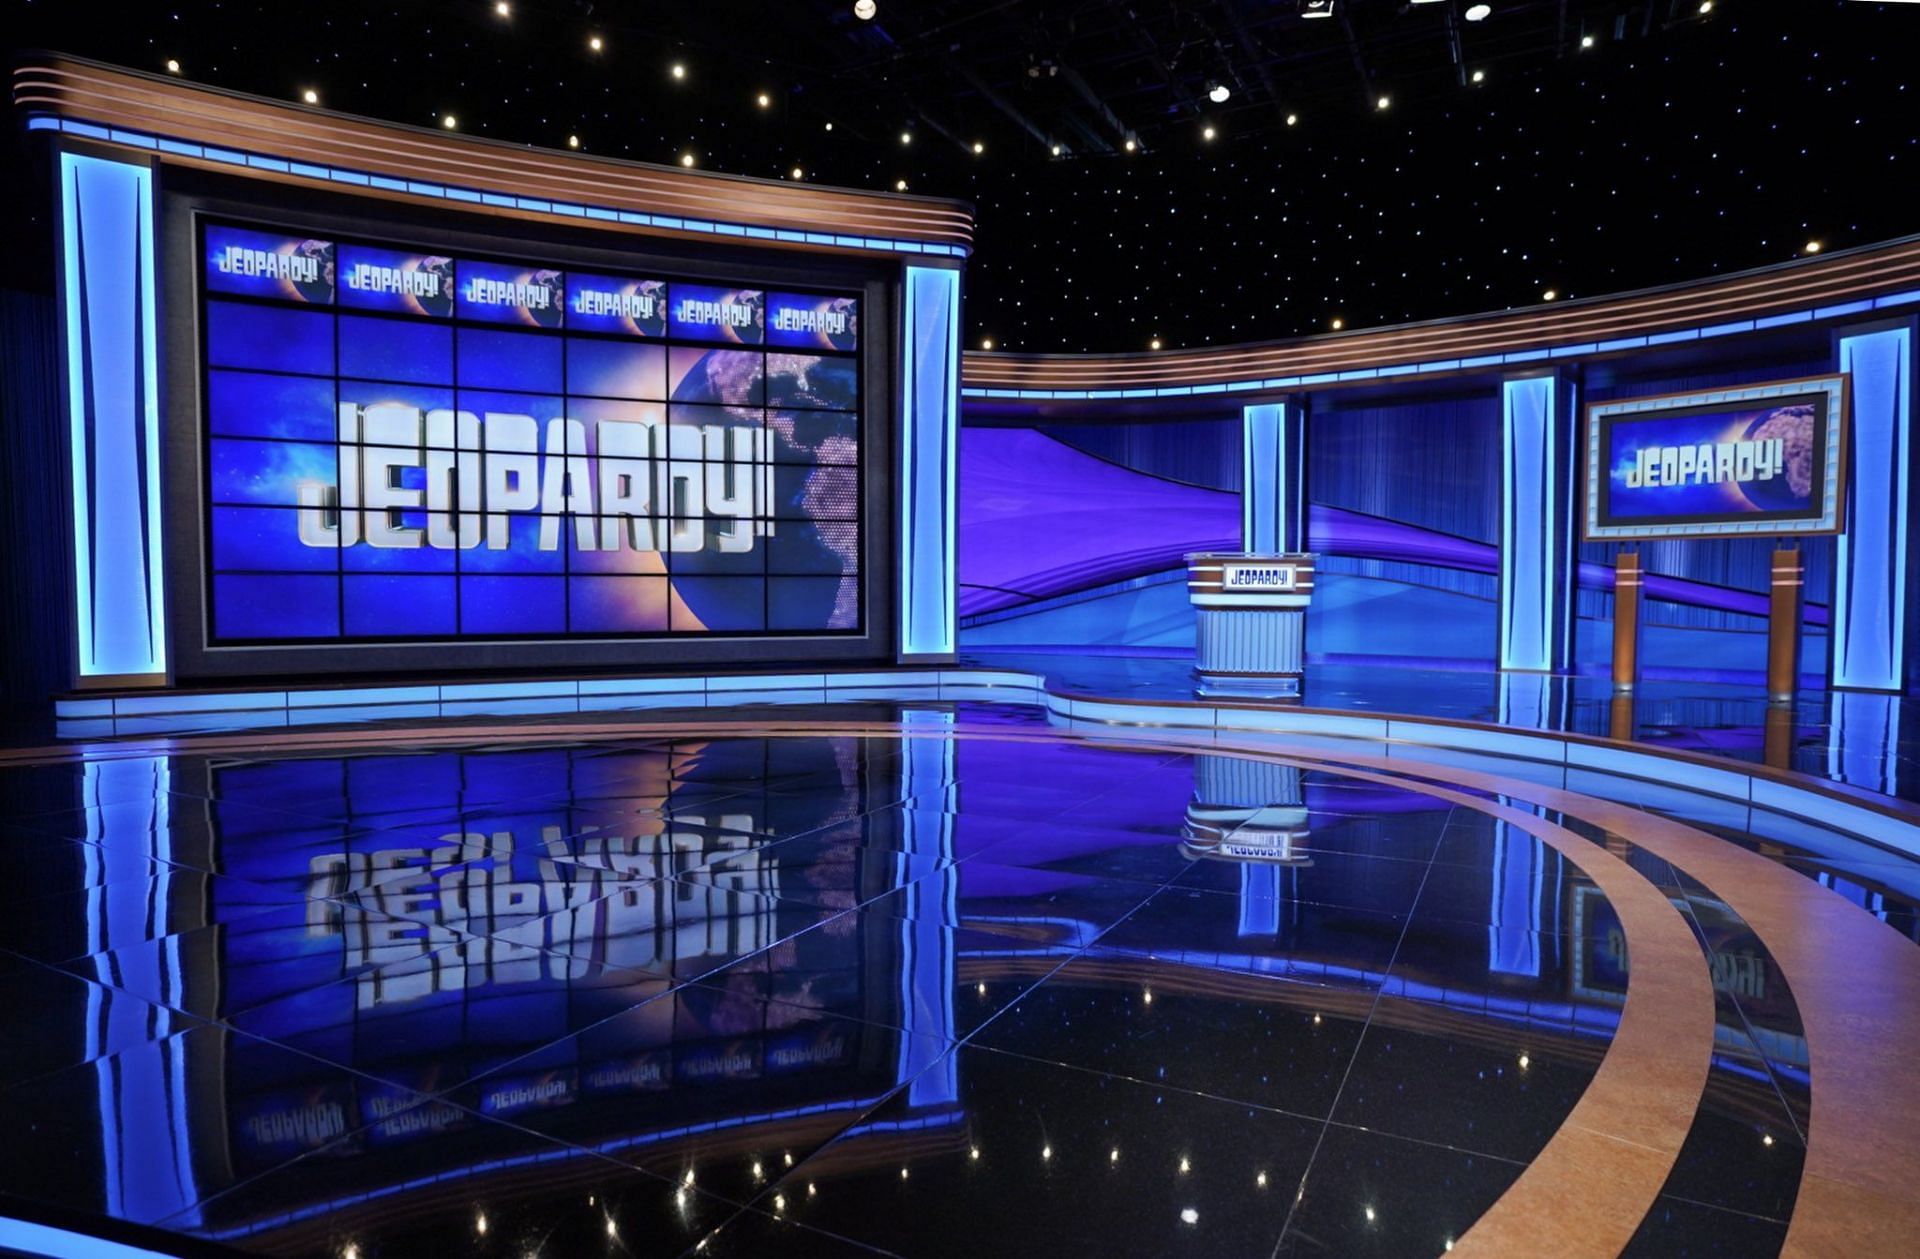 A still from Jeopardy! (Image via @KenJennings/Instagram)